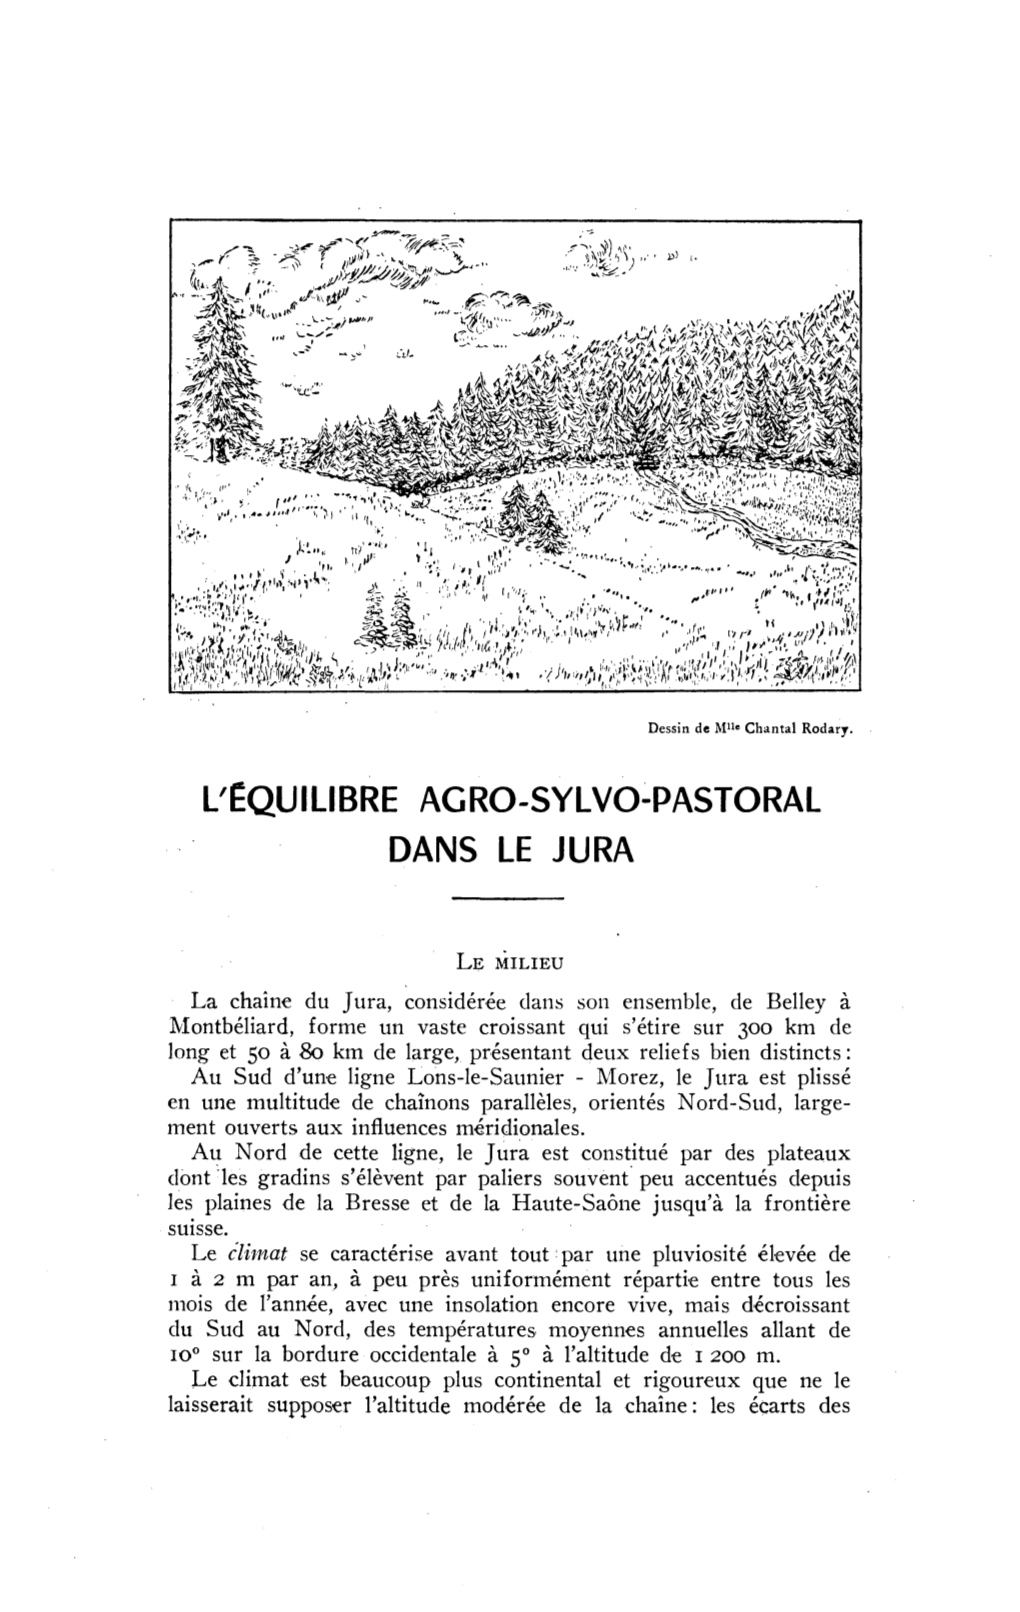 L'équilibre Agro-Sylvo-Pastoral Dans Le Jura